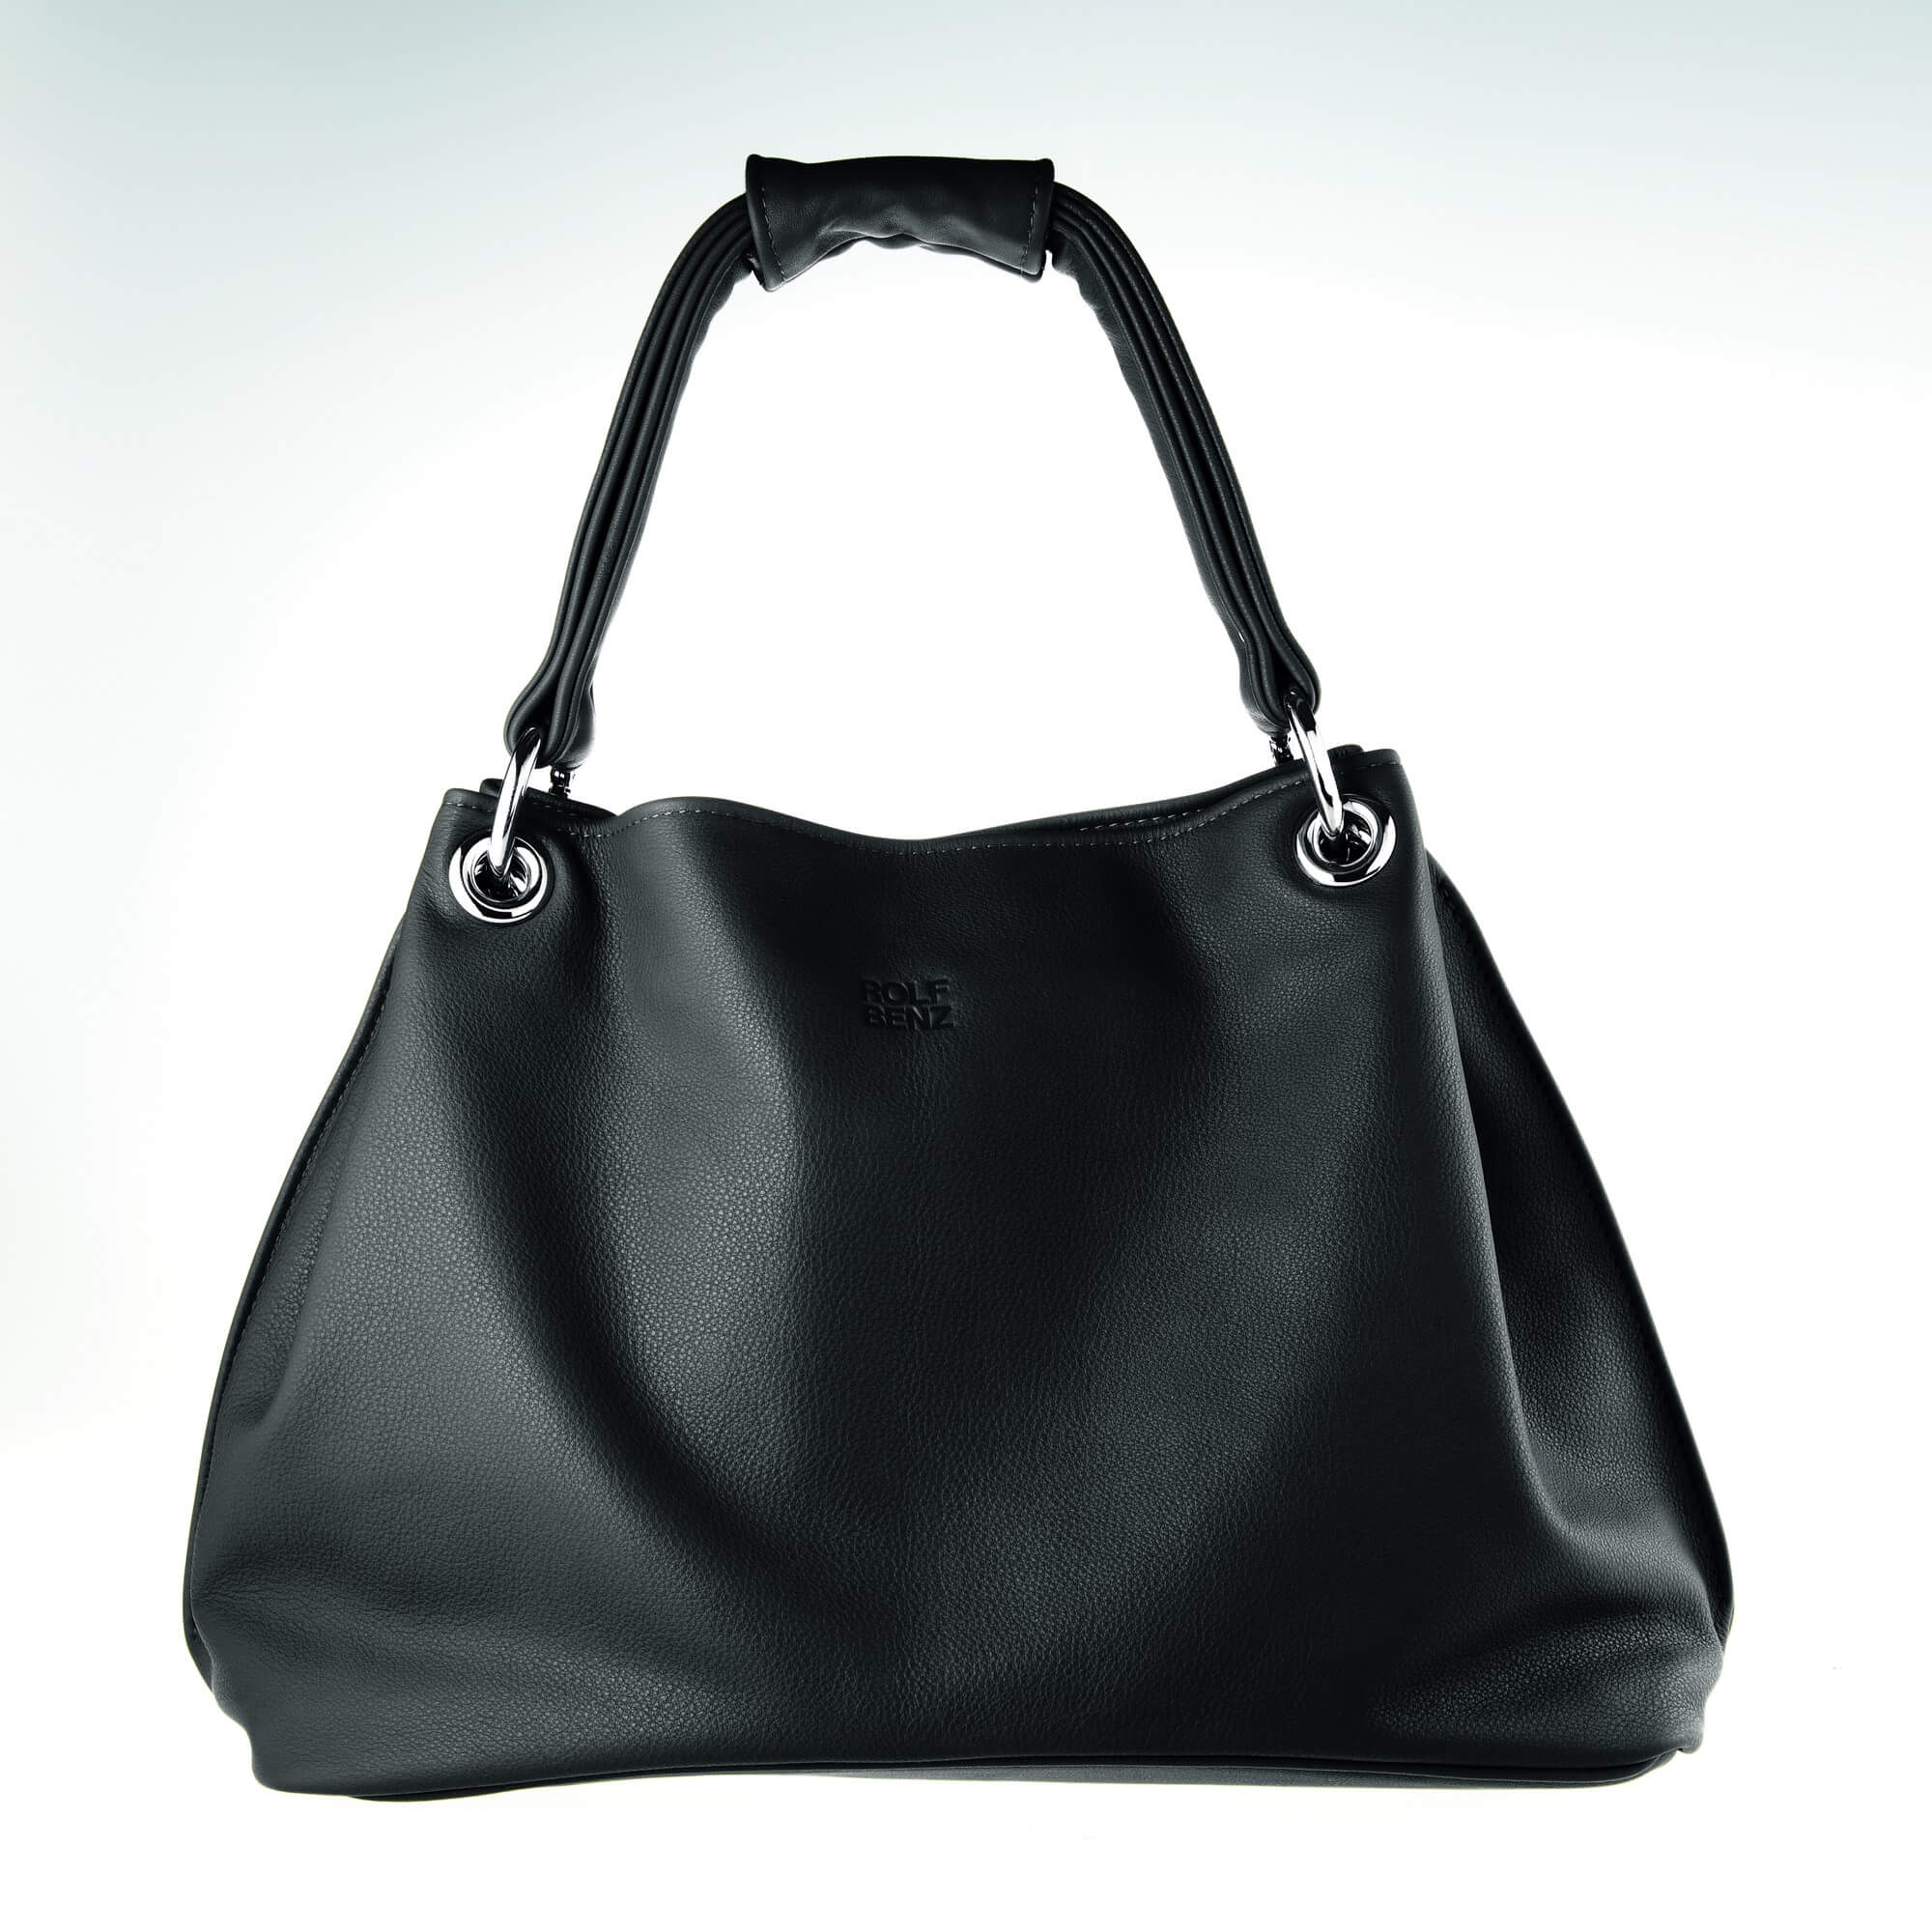 Черная дамская сумка Rolf-Benz Mio Bag из Германии